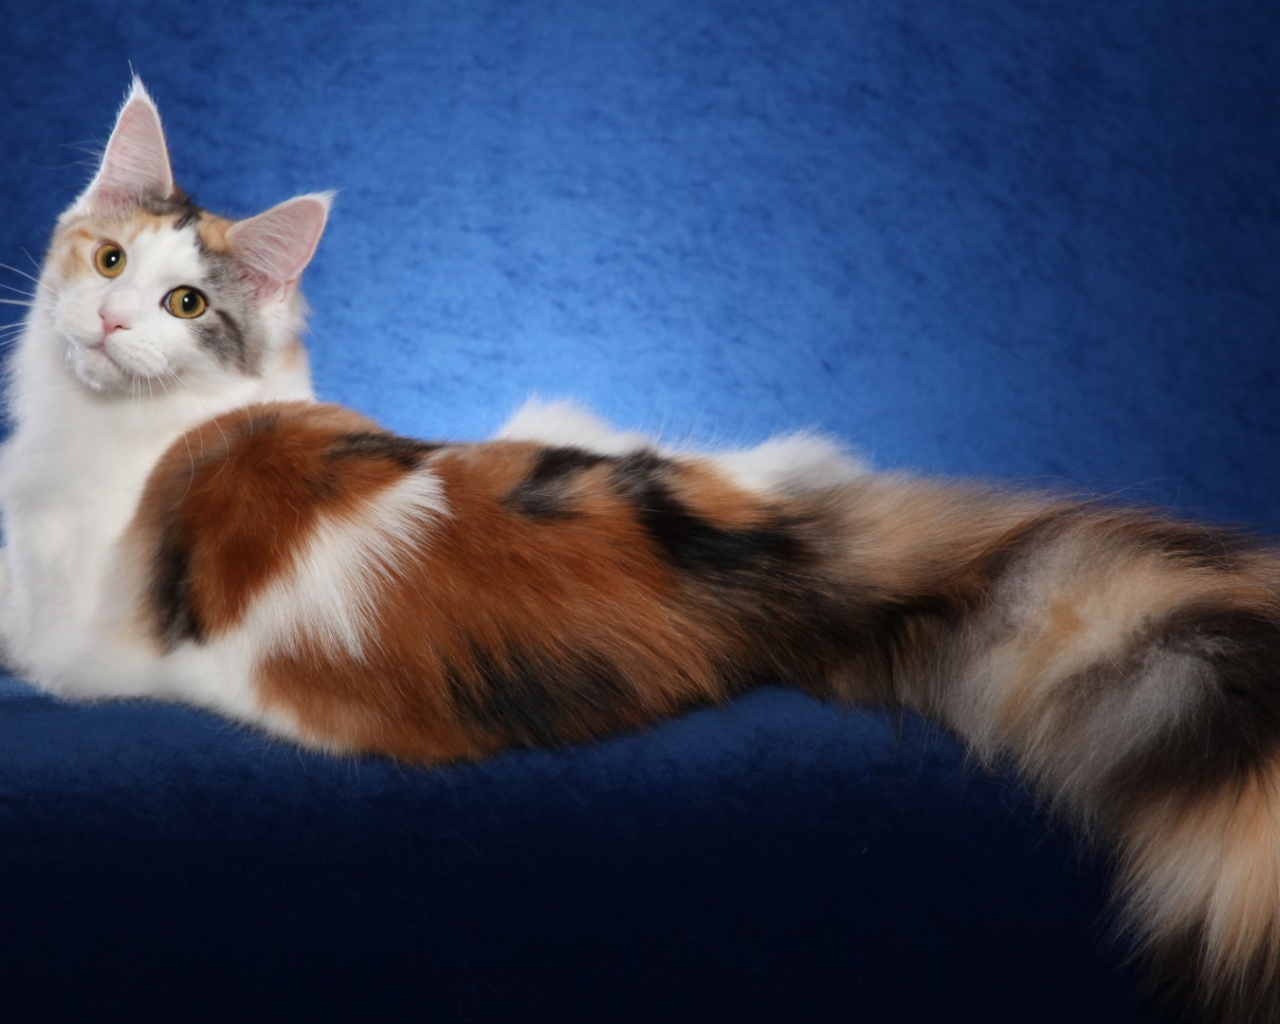 Bеликолепная кошка с роскошным хвостом